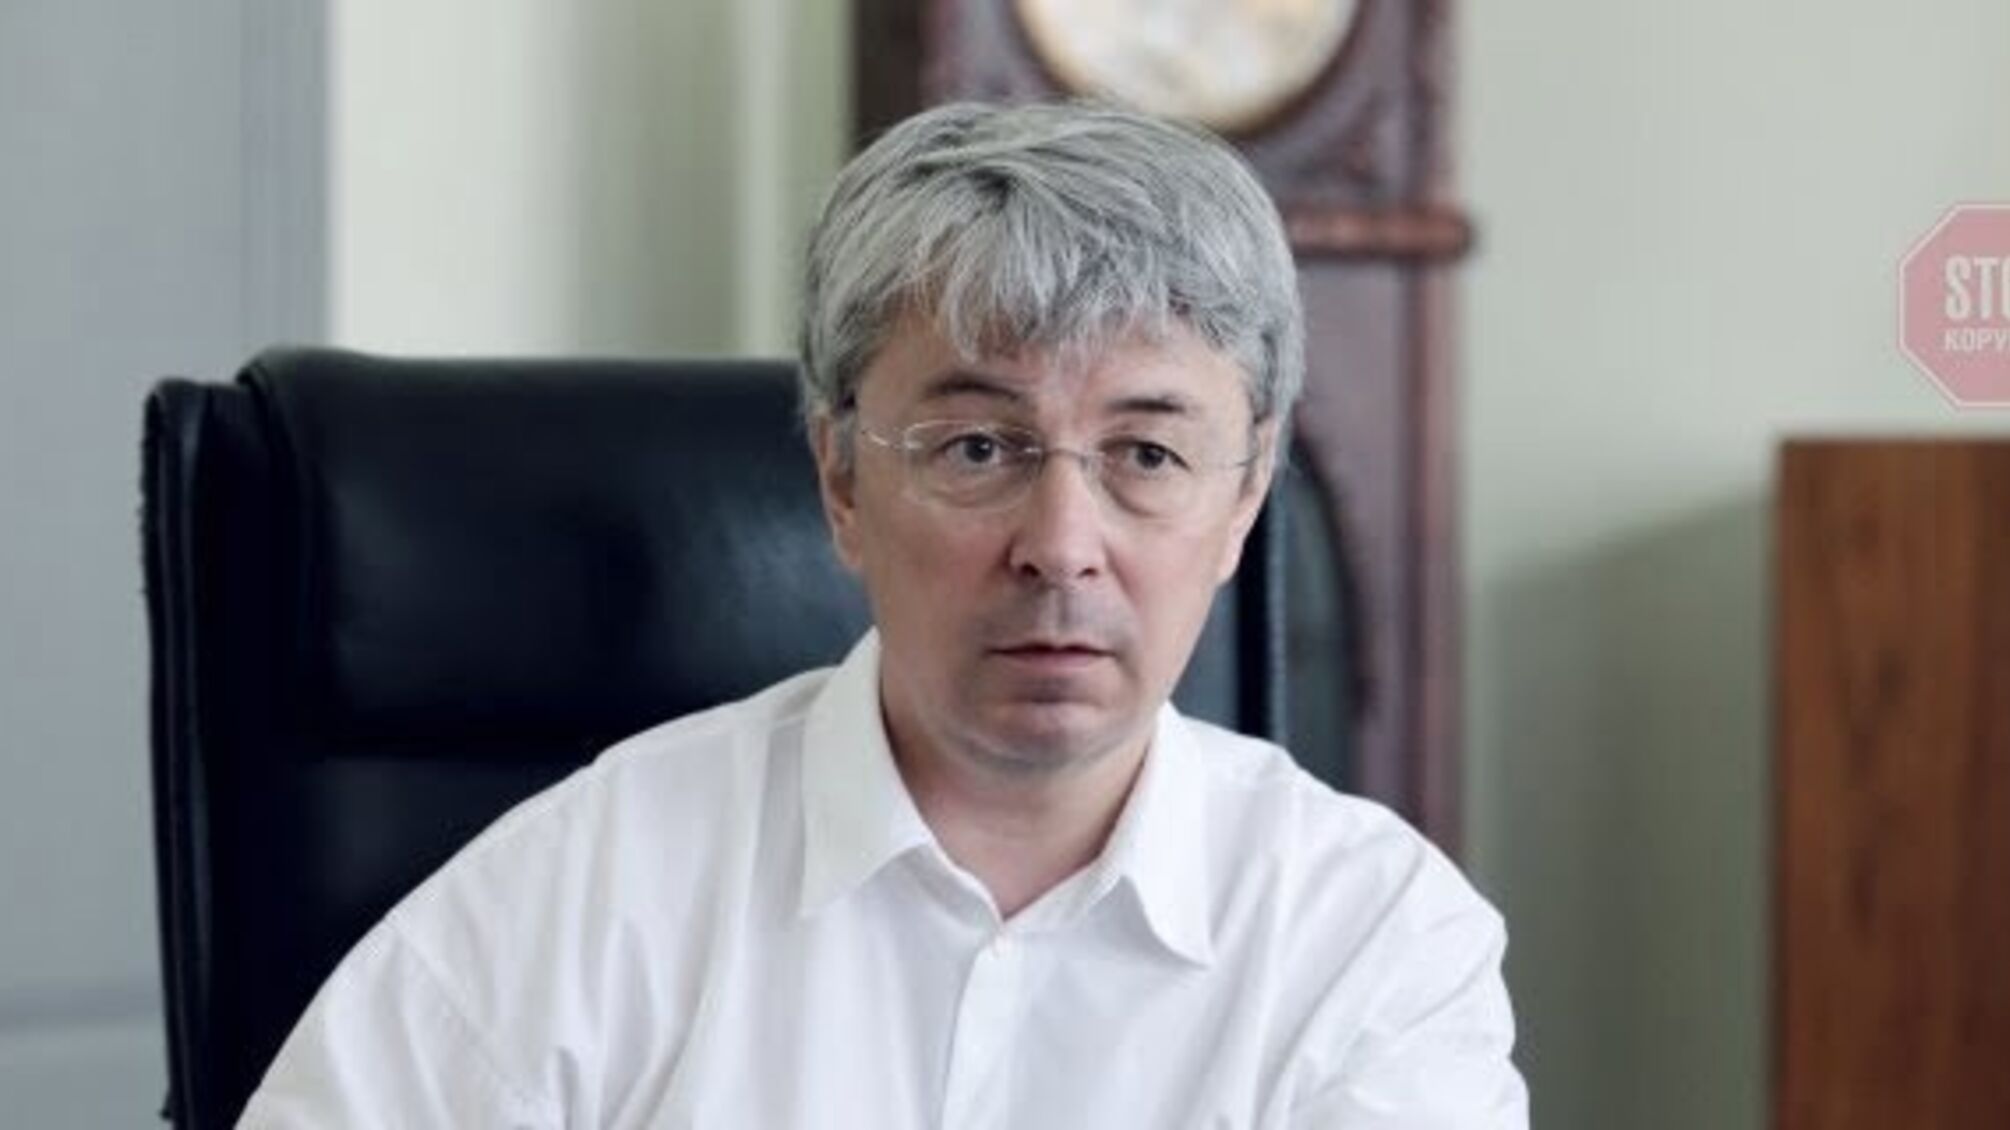 КГГА: Минкульт без объяснений запретил Киеву проводить памятное мероприятие 9 мая